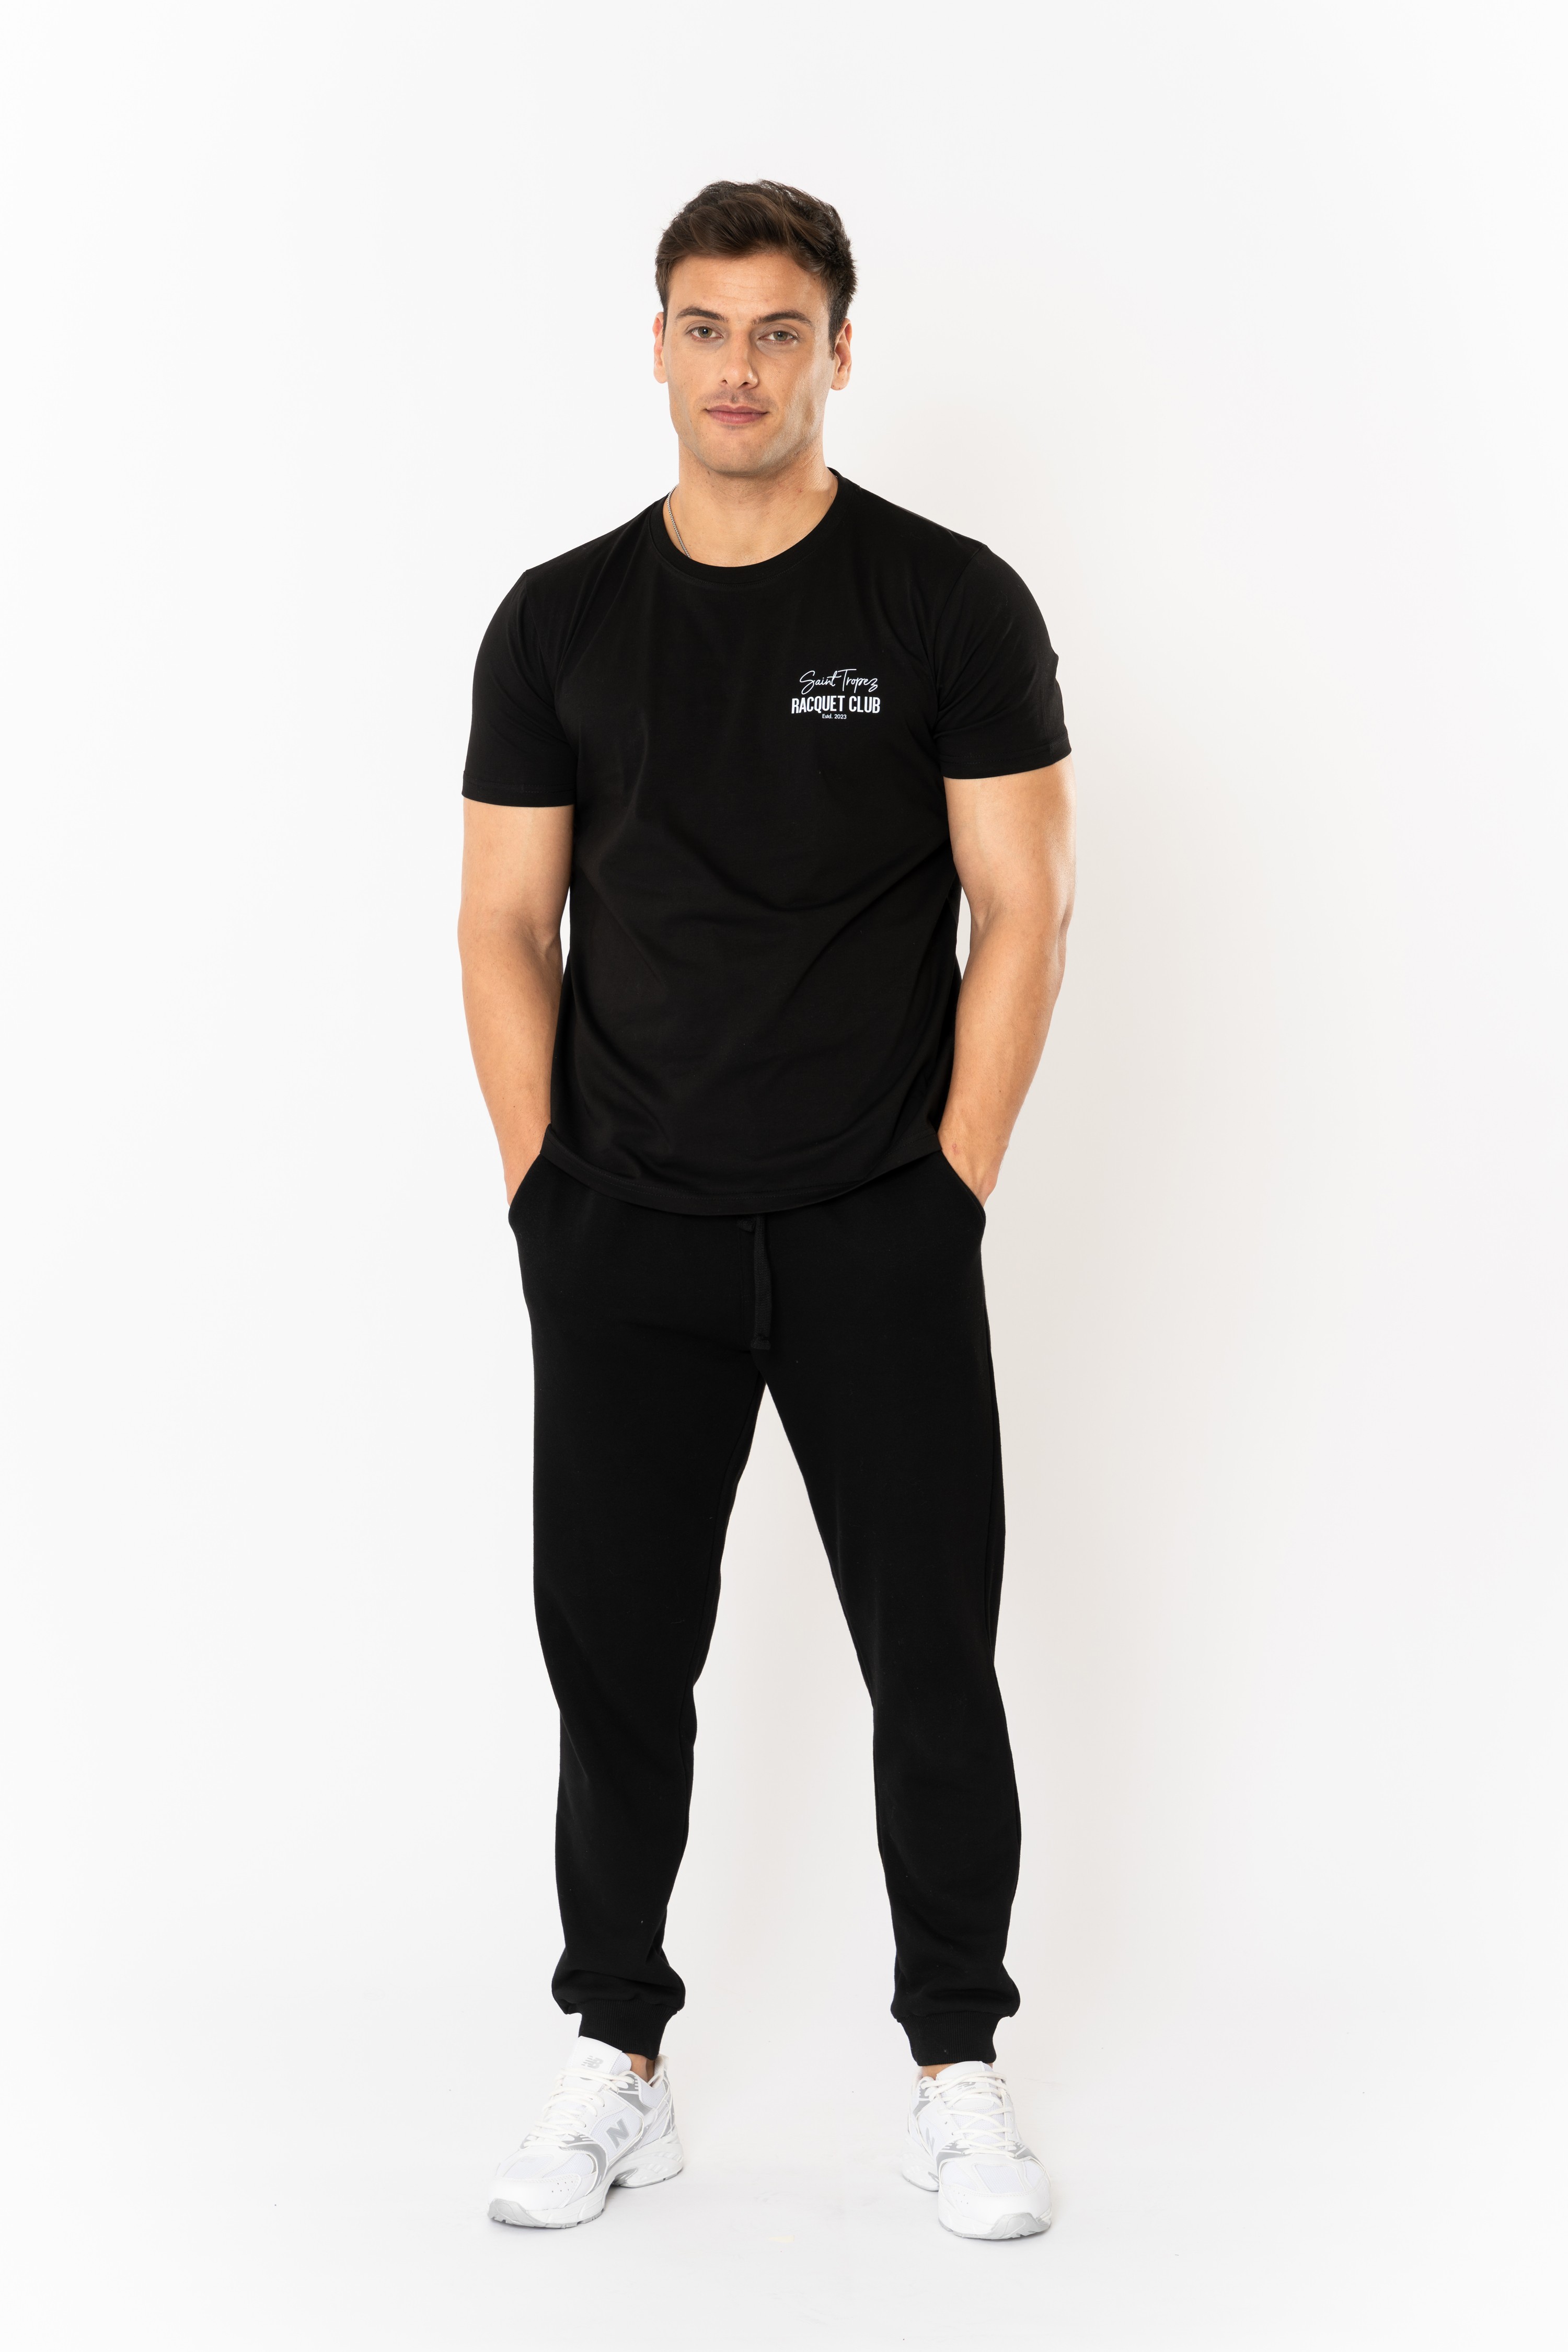 Racquet Lover Regular T-Shirt Erkek - Siyah